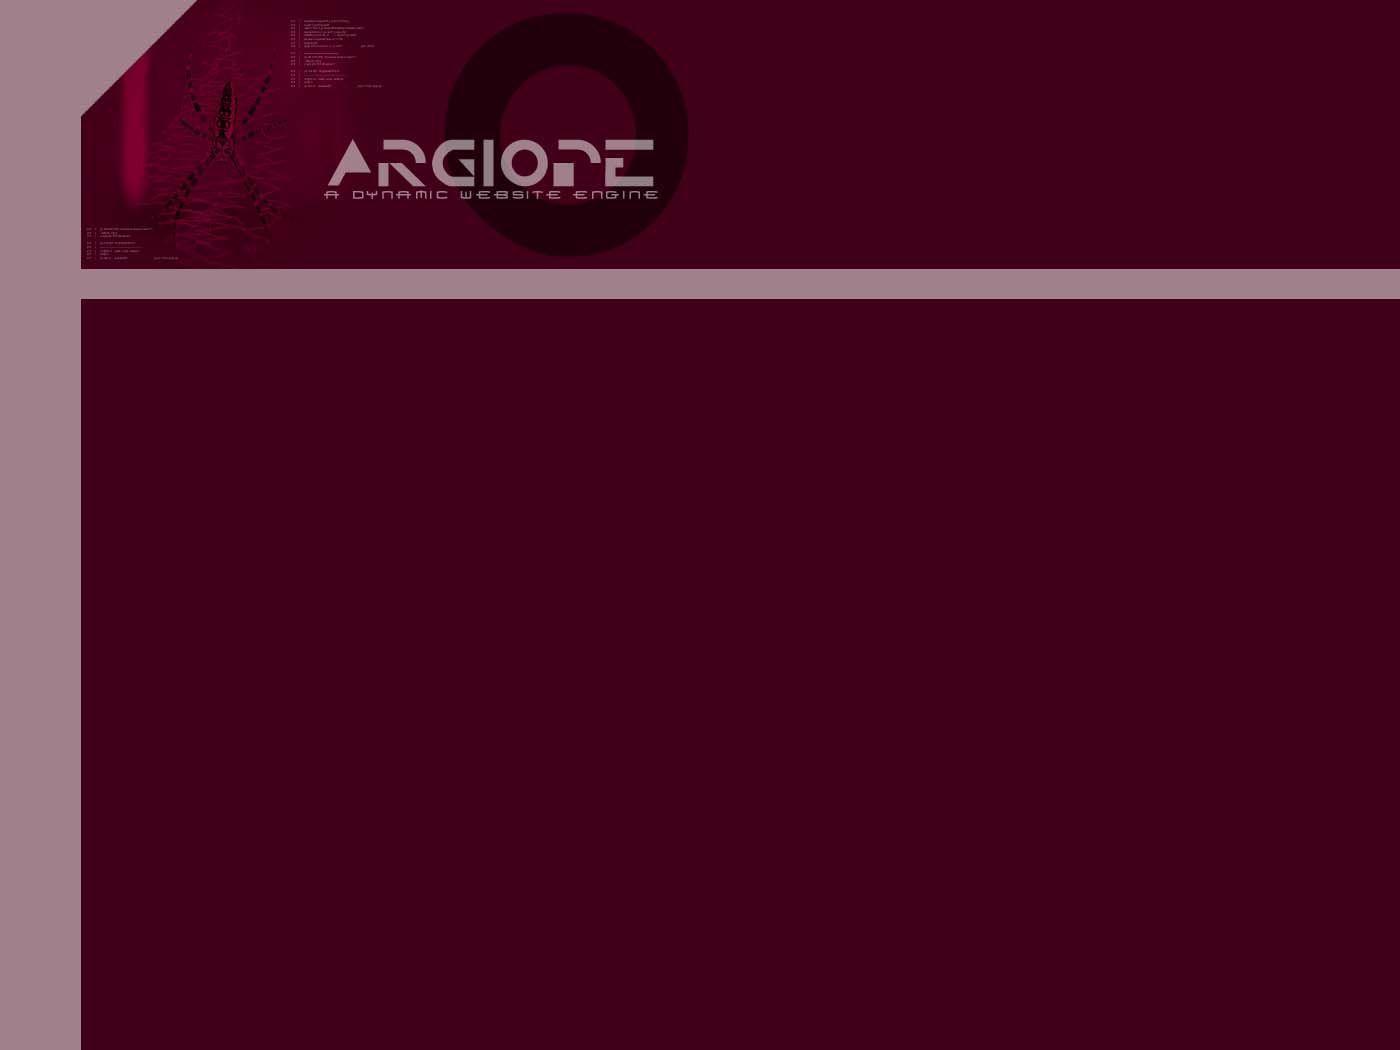 Argiope Desktop Wallpaper